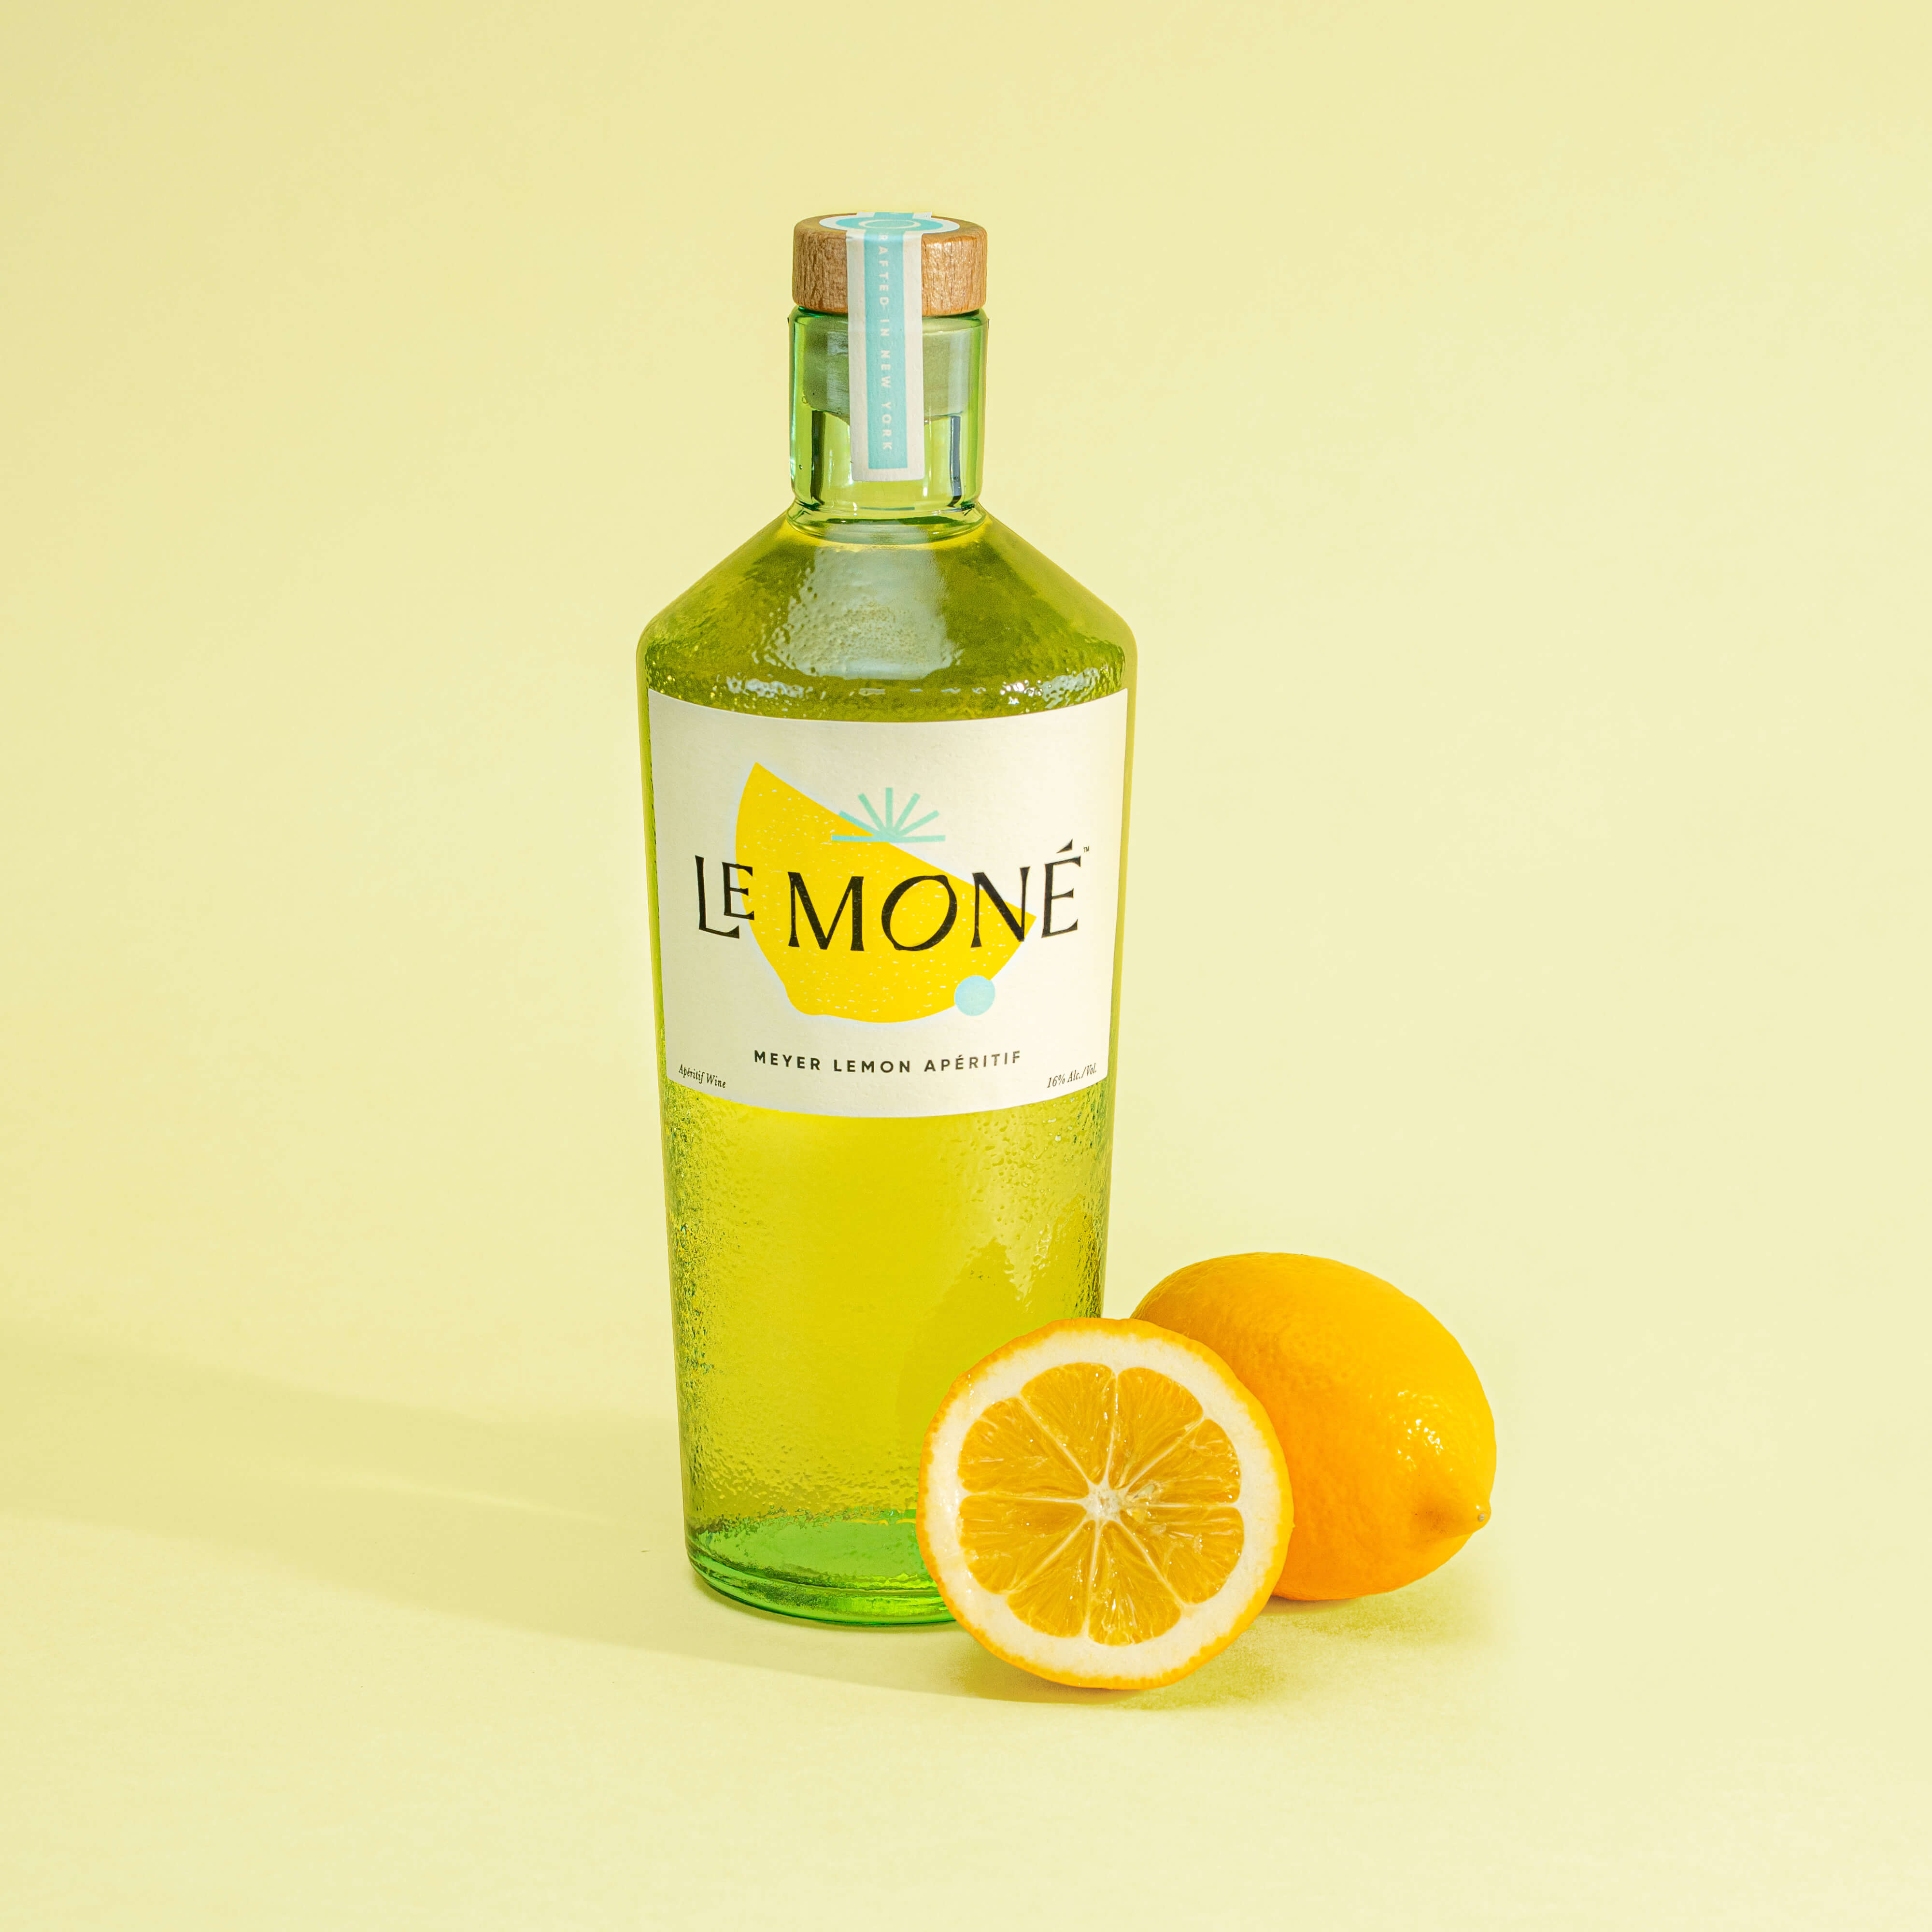 Le Moné - Meyer Lemon